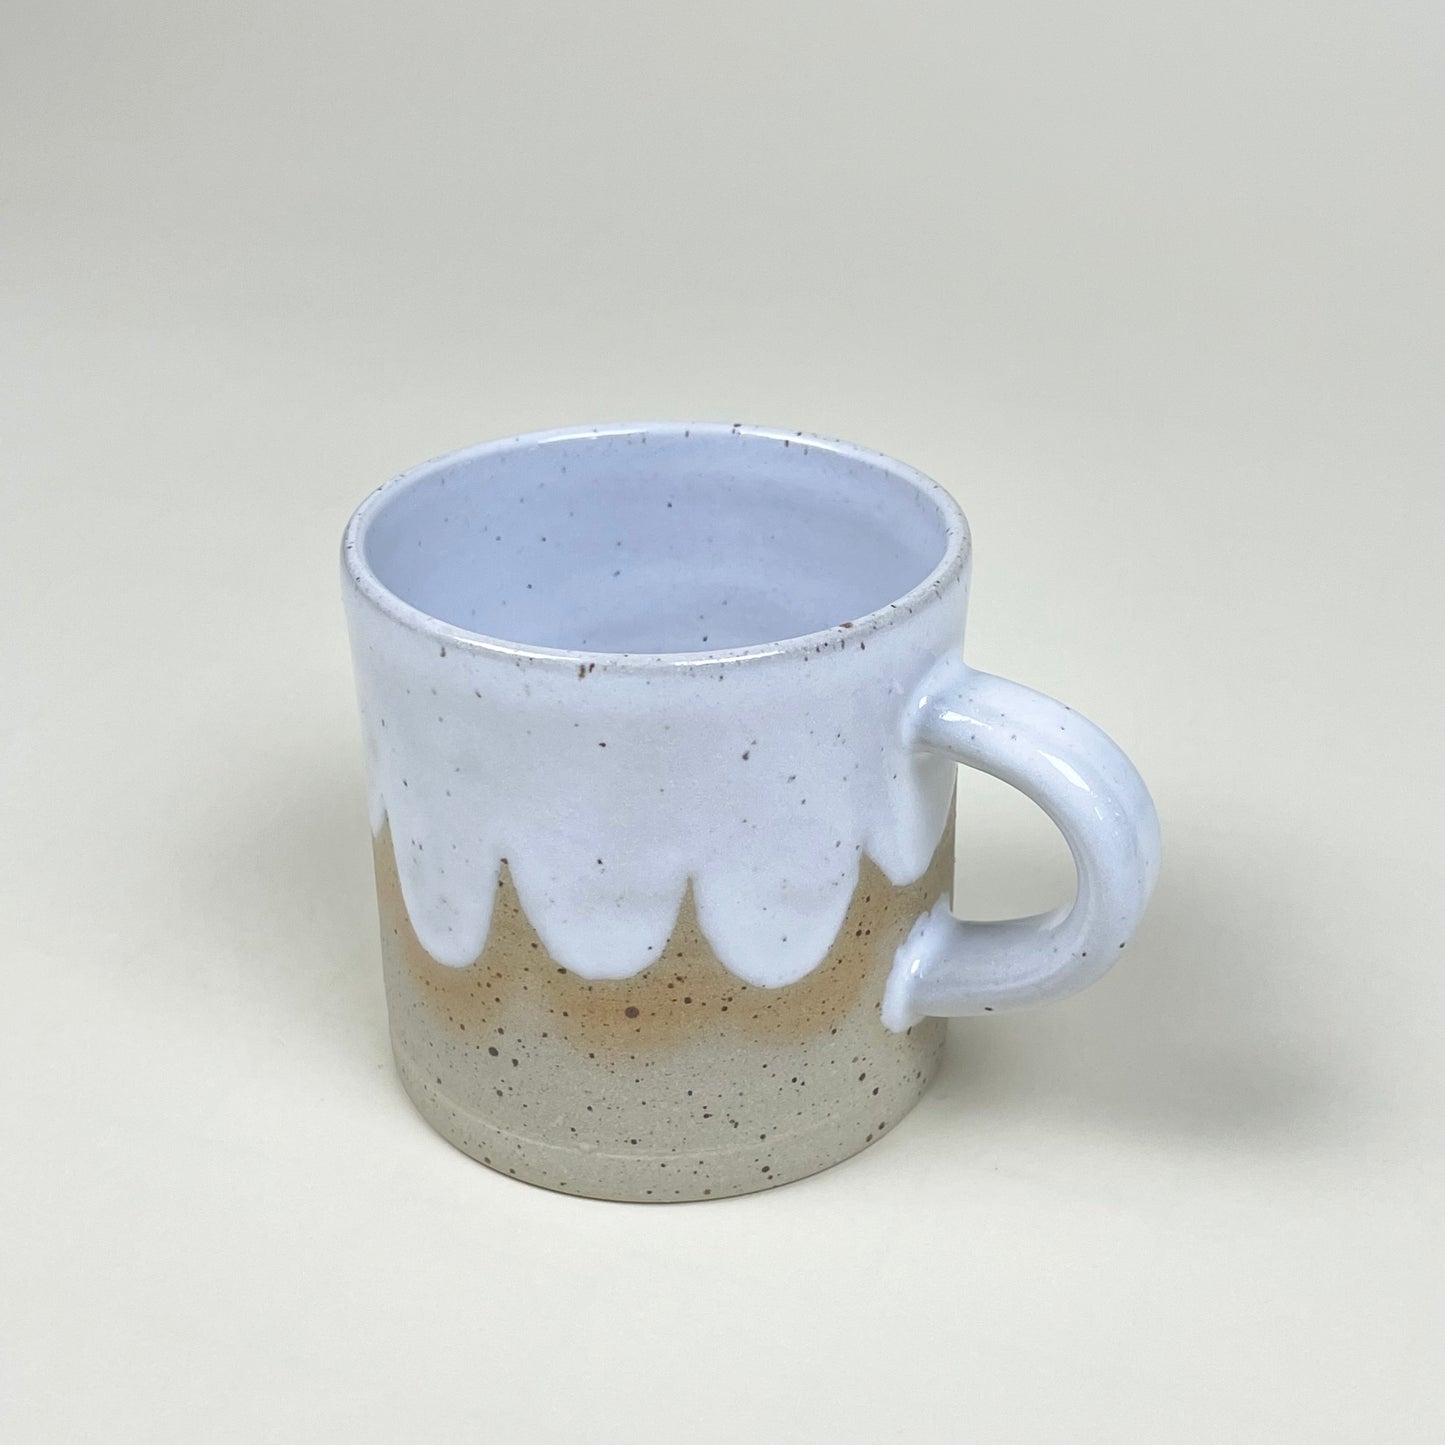 Foam Mug by Stina Lord